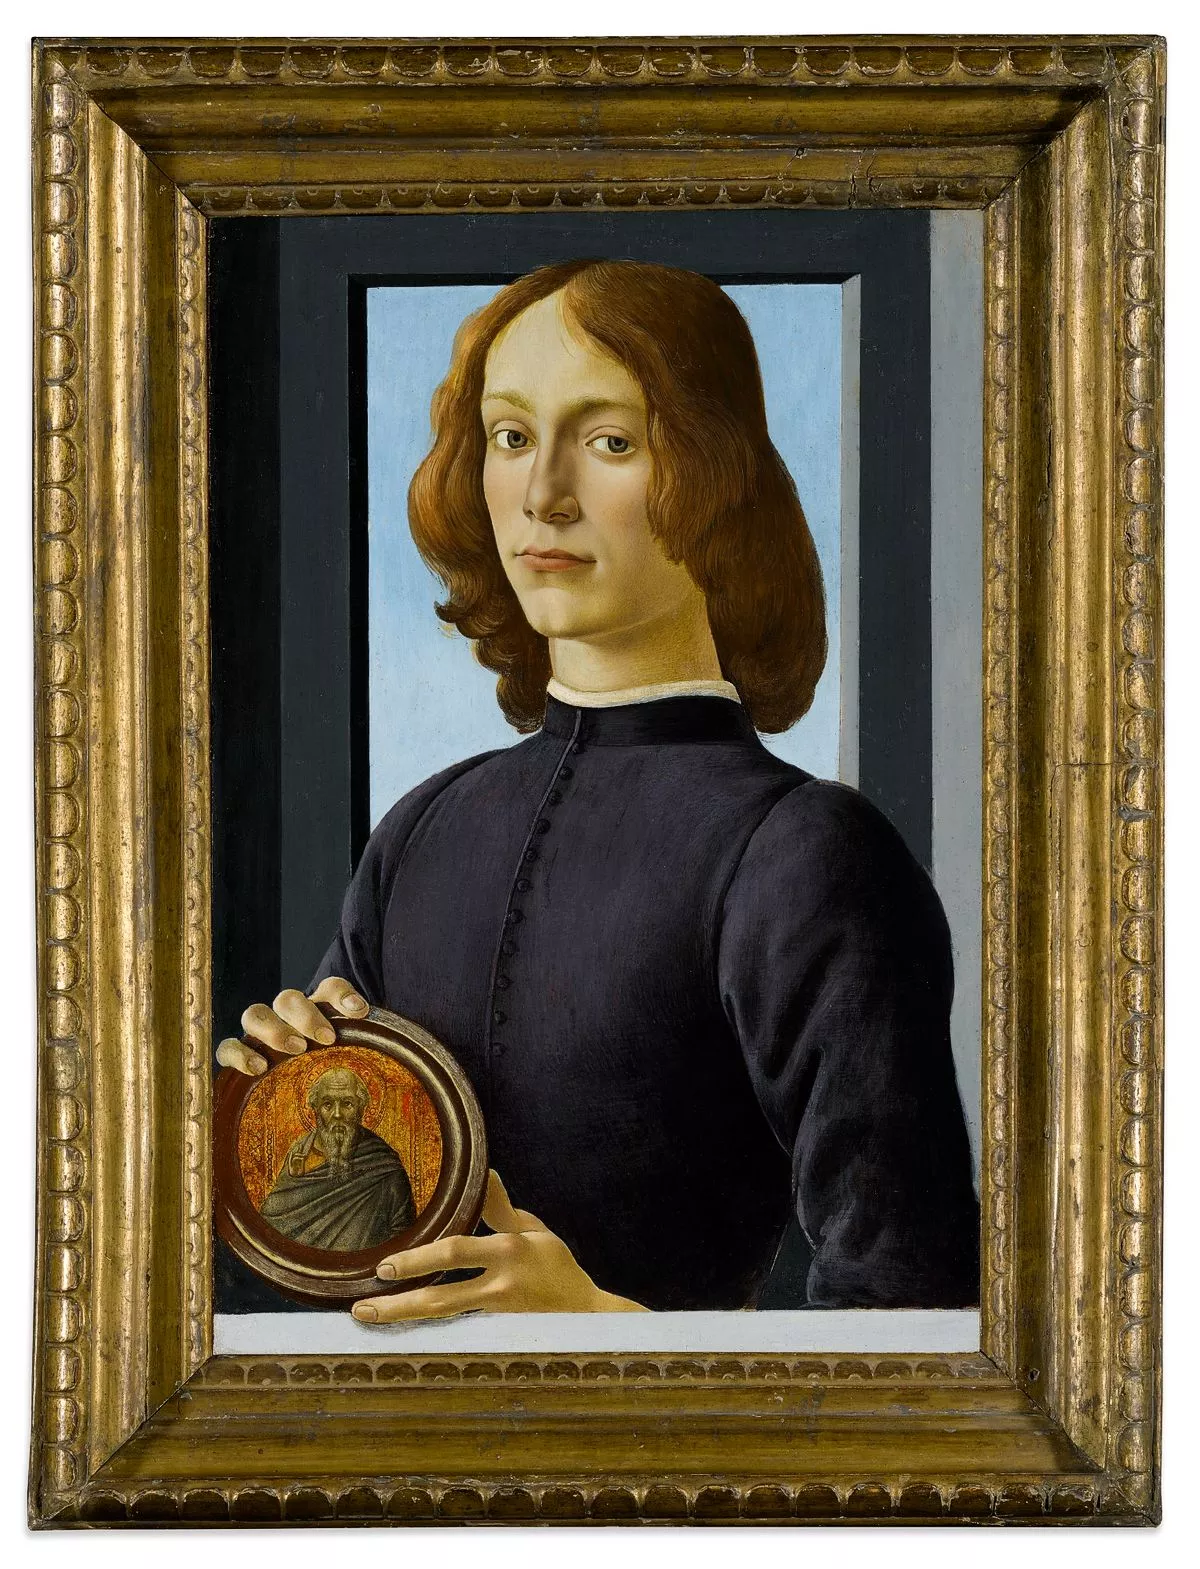 Картина «Портрет молодого человека с медальоном» Сандро Боттичелли, фото 1